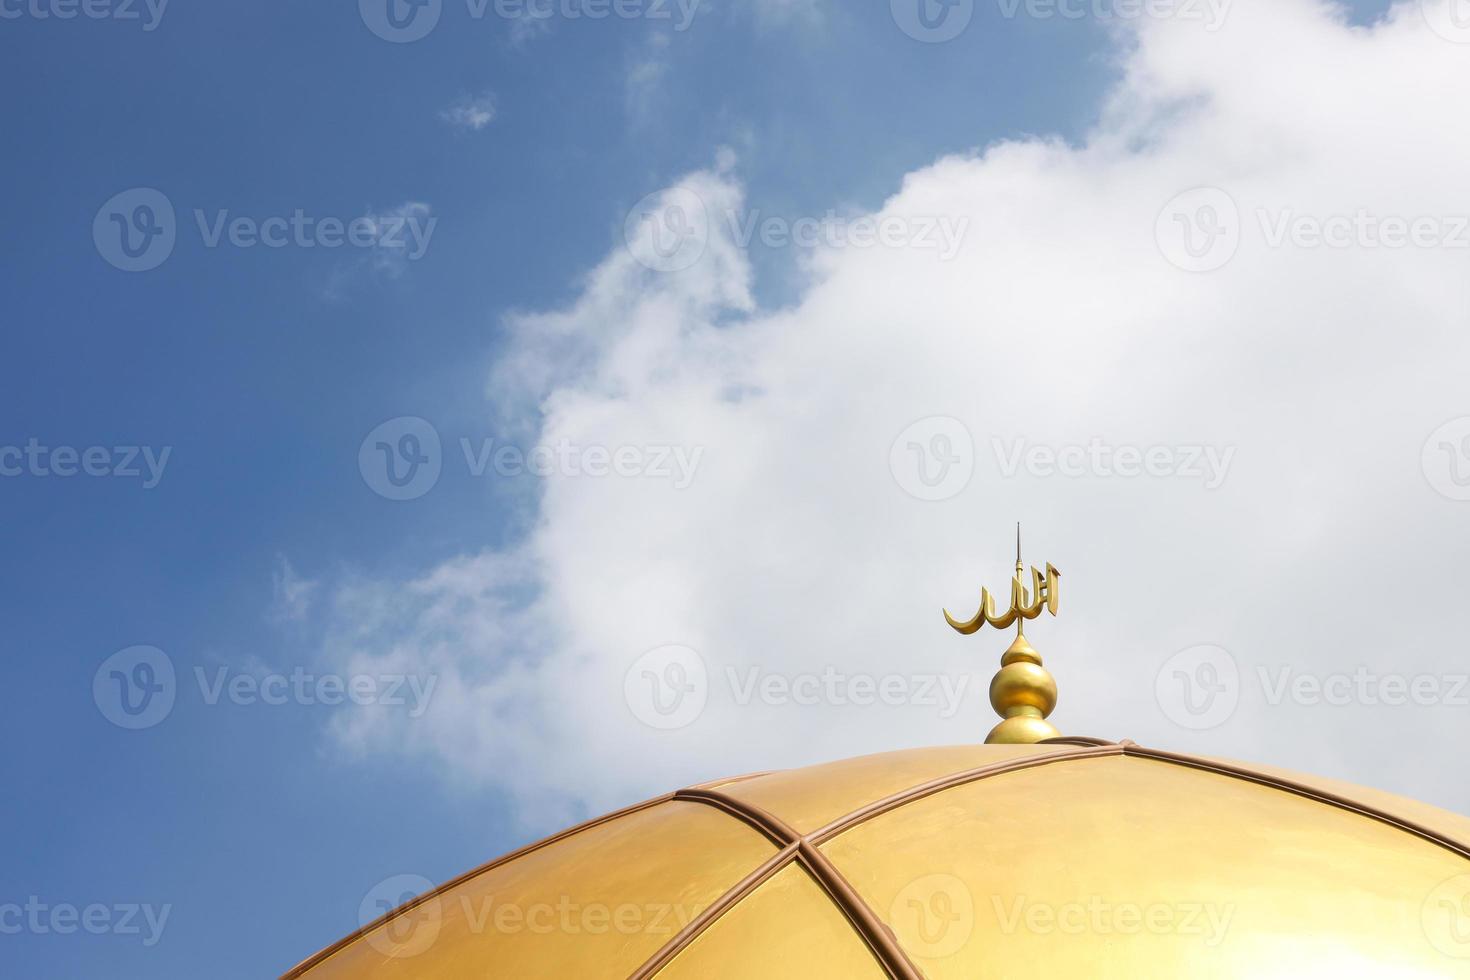 de inscriptie allah op gouden koepel op blauwe hemel voor moslim concept achtergrond foto